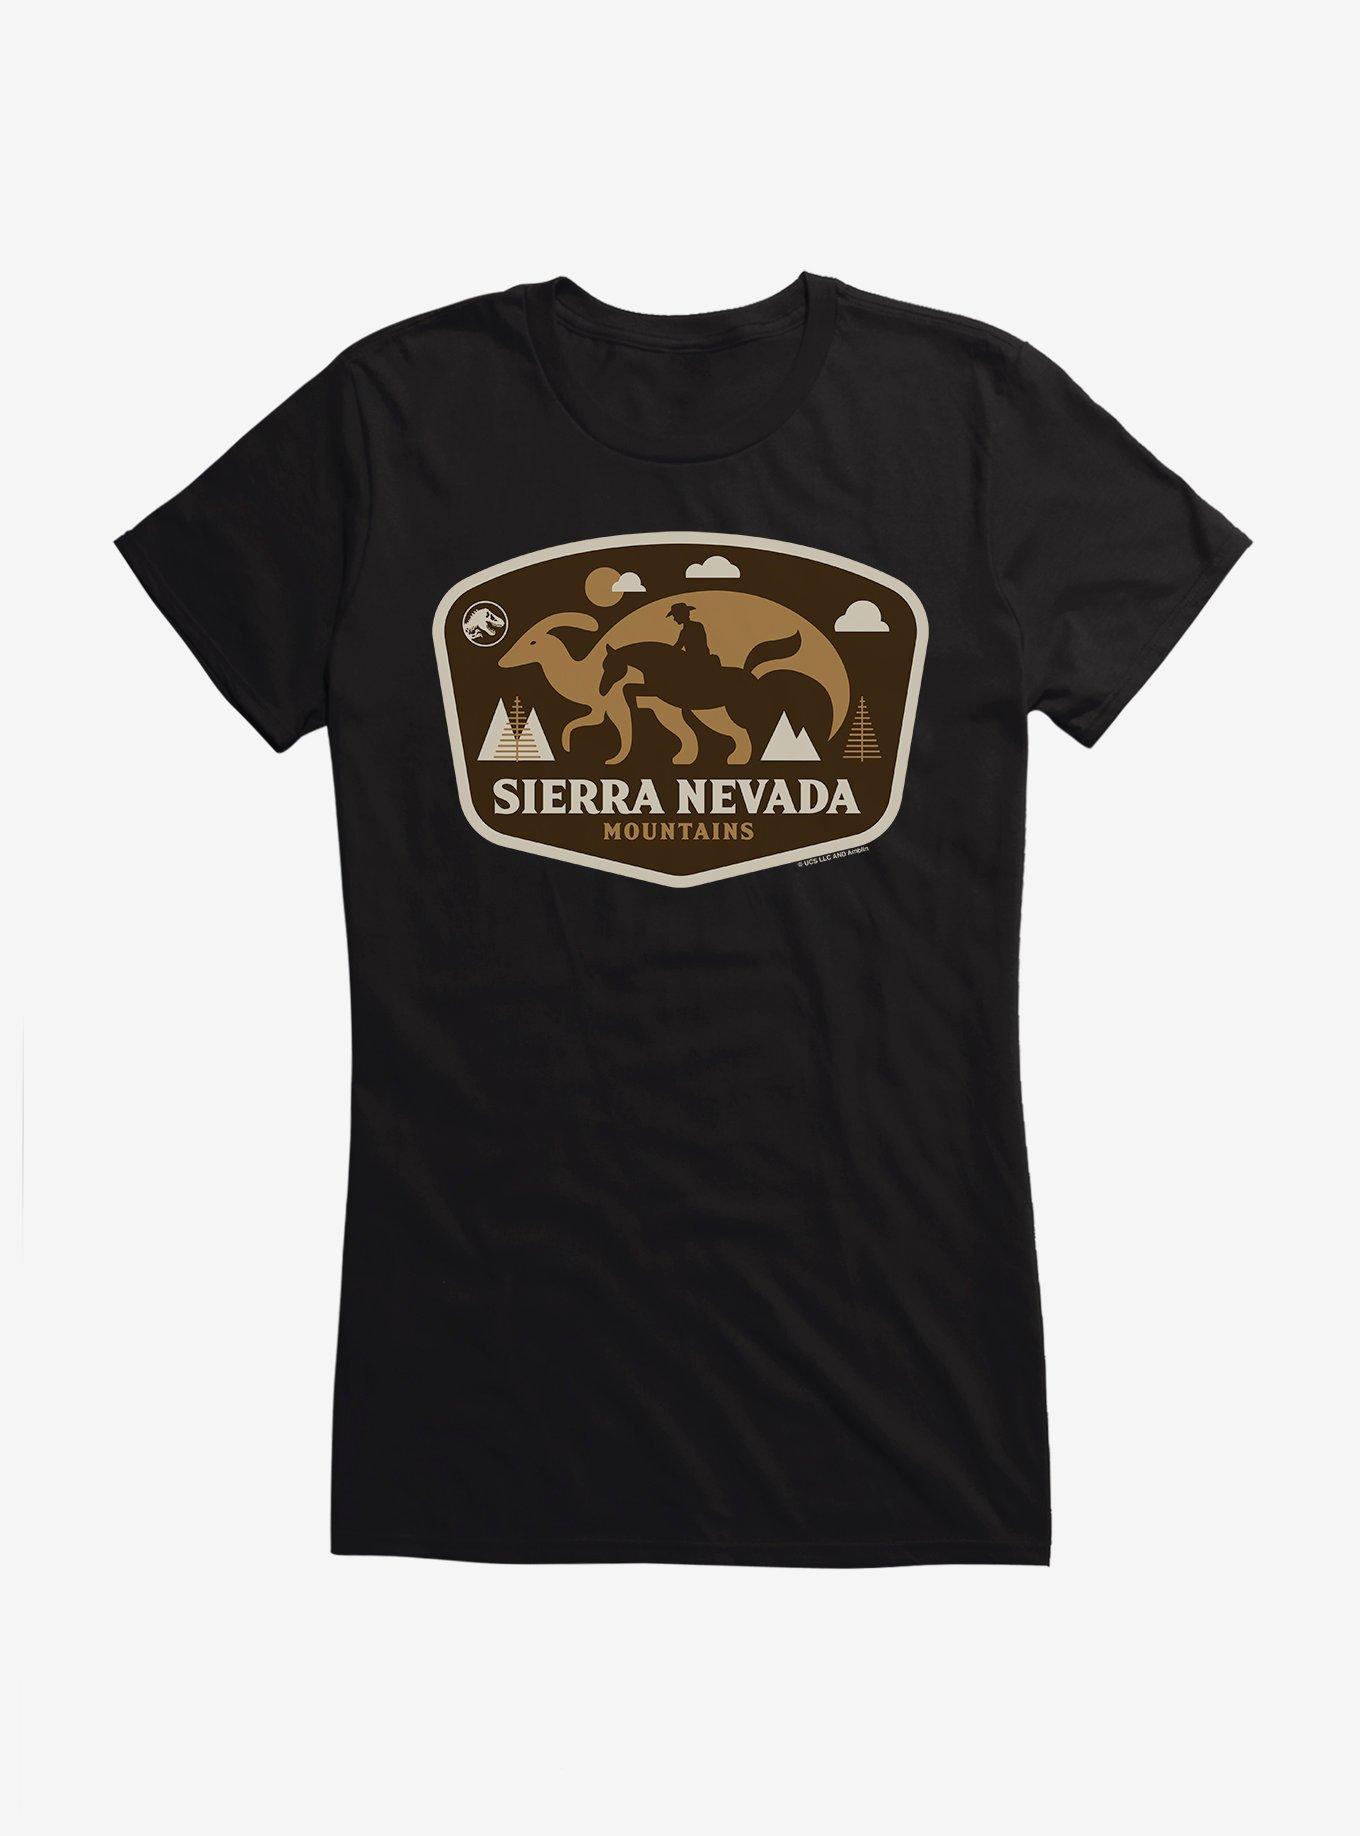 Jurassic World Dominion Parasaurolophus Badge Girls T-Shirt